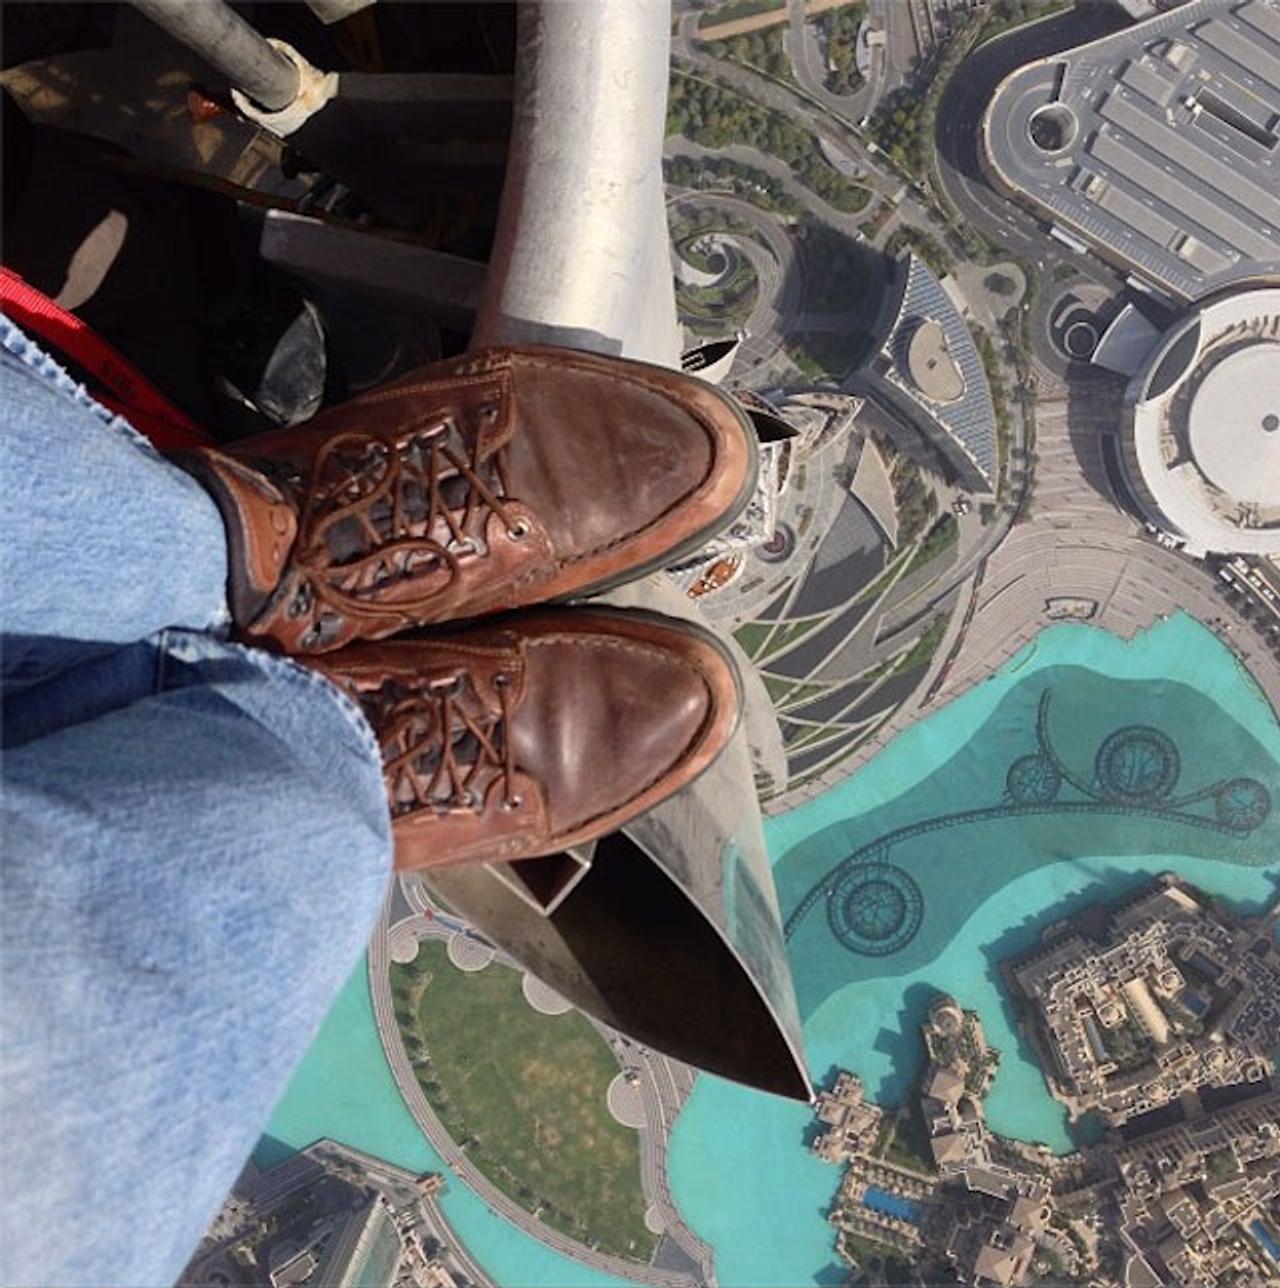 高所恐怖症の人観覧注意、世界1高い高層ビル｢ブルジュ・ハリファ｣からInstagramで撮影した写真が話題に